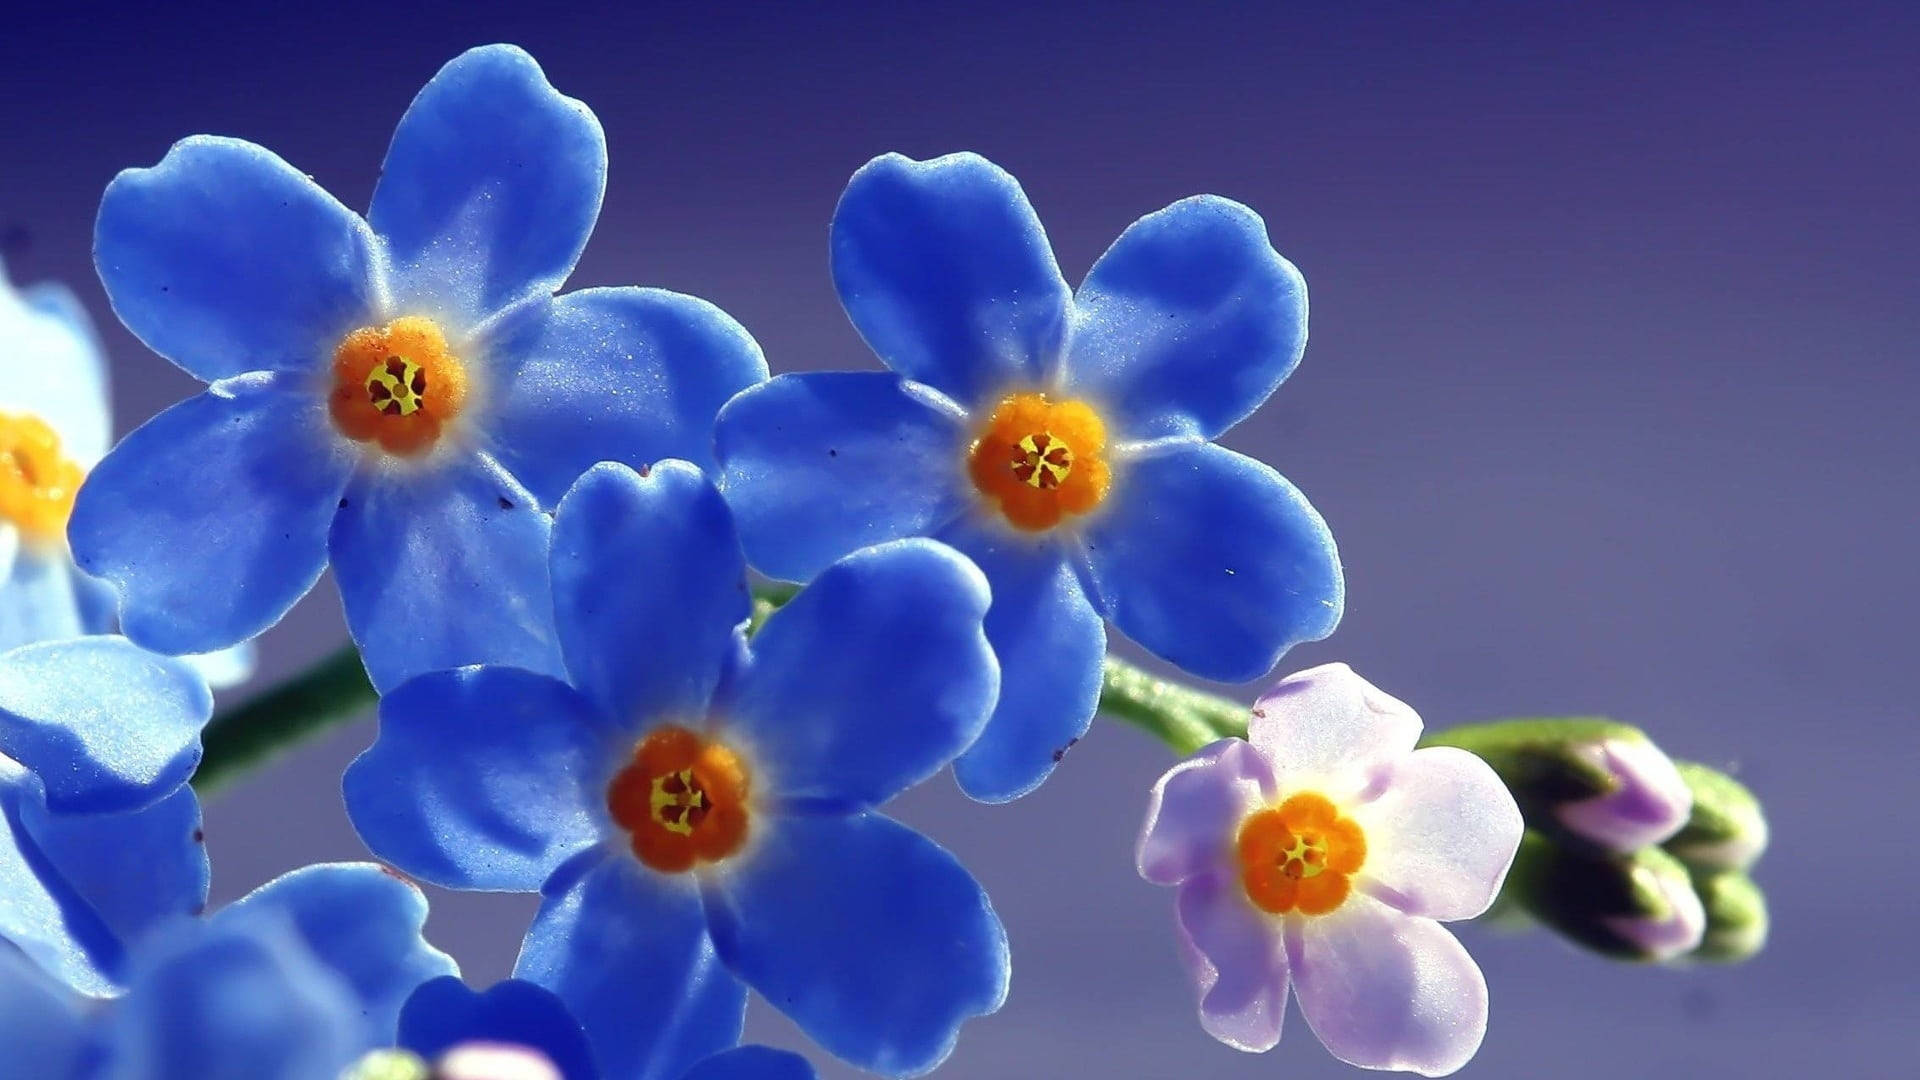 Blue Scorpio Grasses Flowers Picture